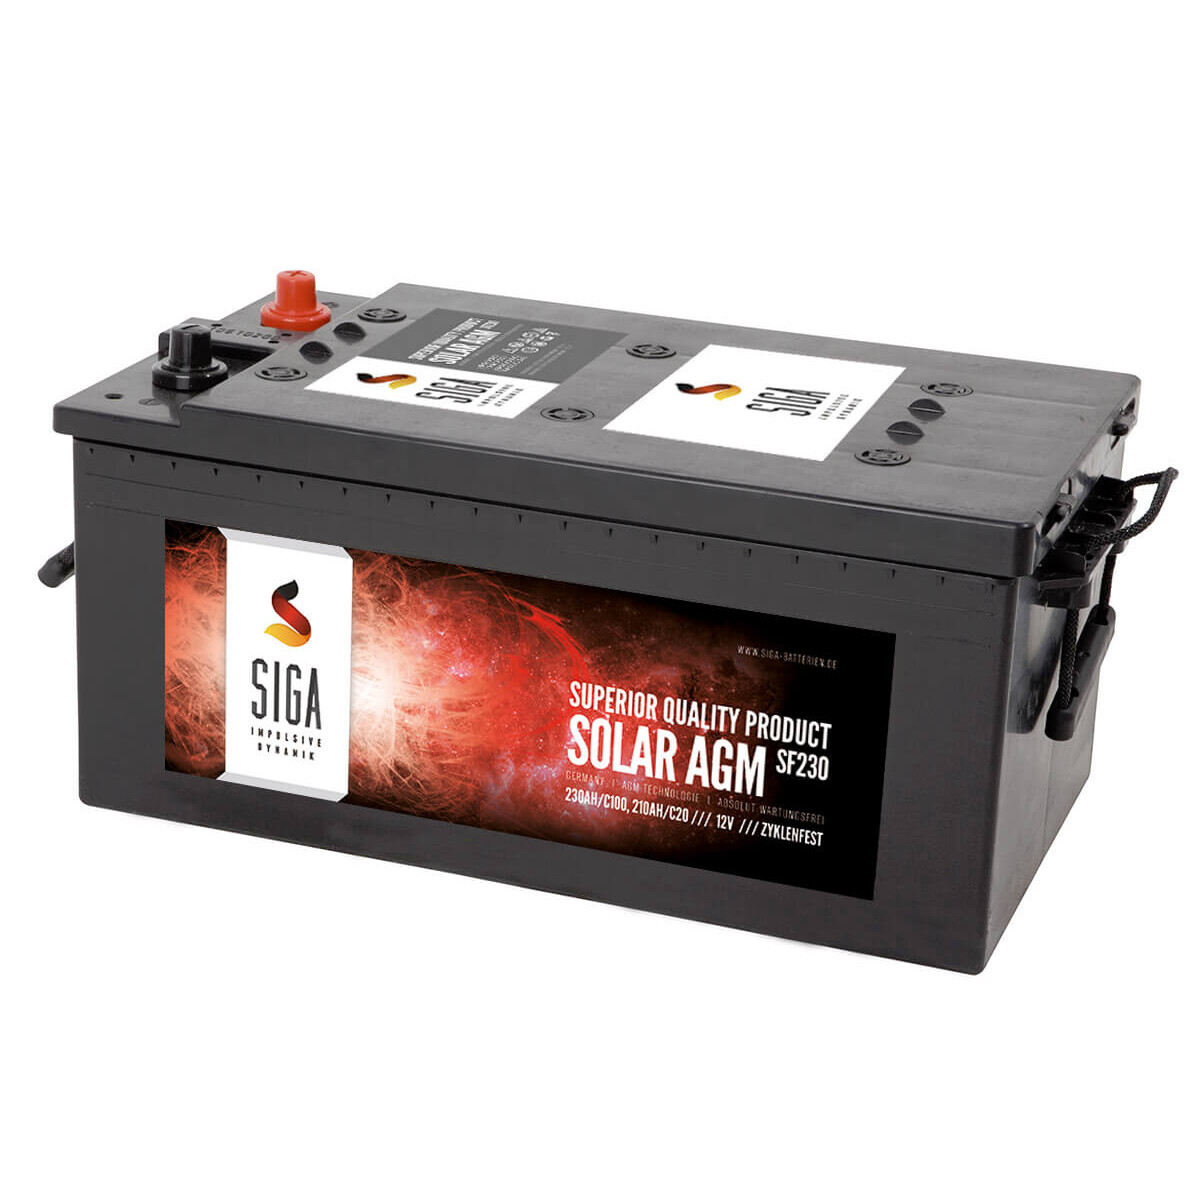 2x HR Solar AGM 12V 230Ah Versorgungsbatterie